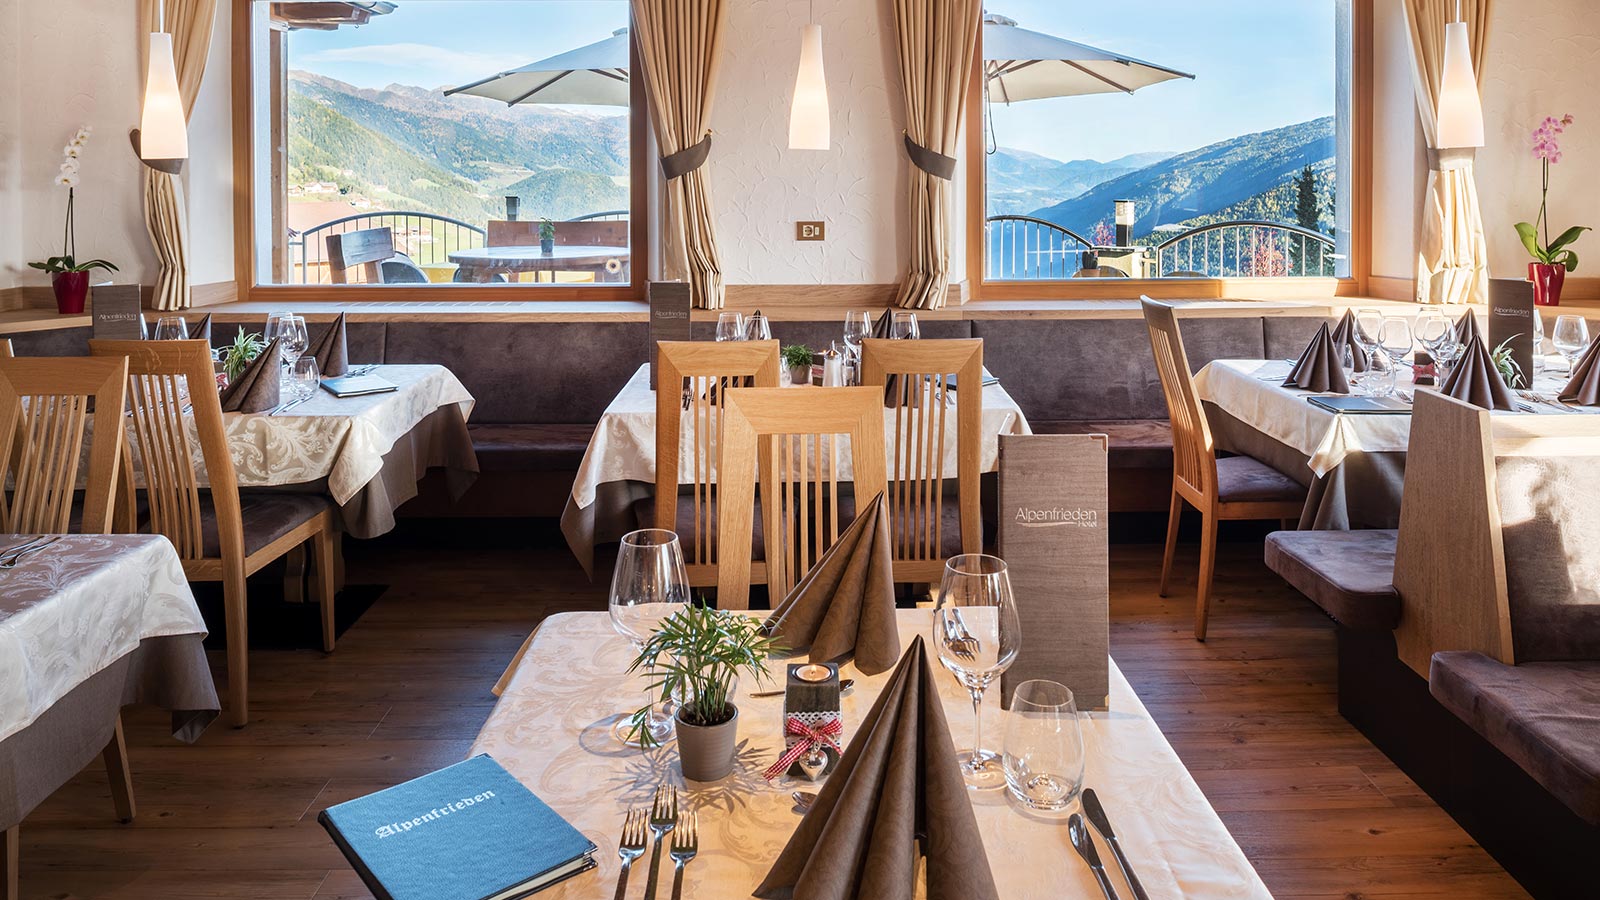 gedeckte Tische im Speisesaal des Hotels Alpenfrieden in Meransen